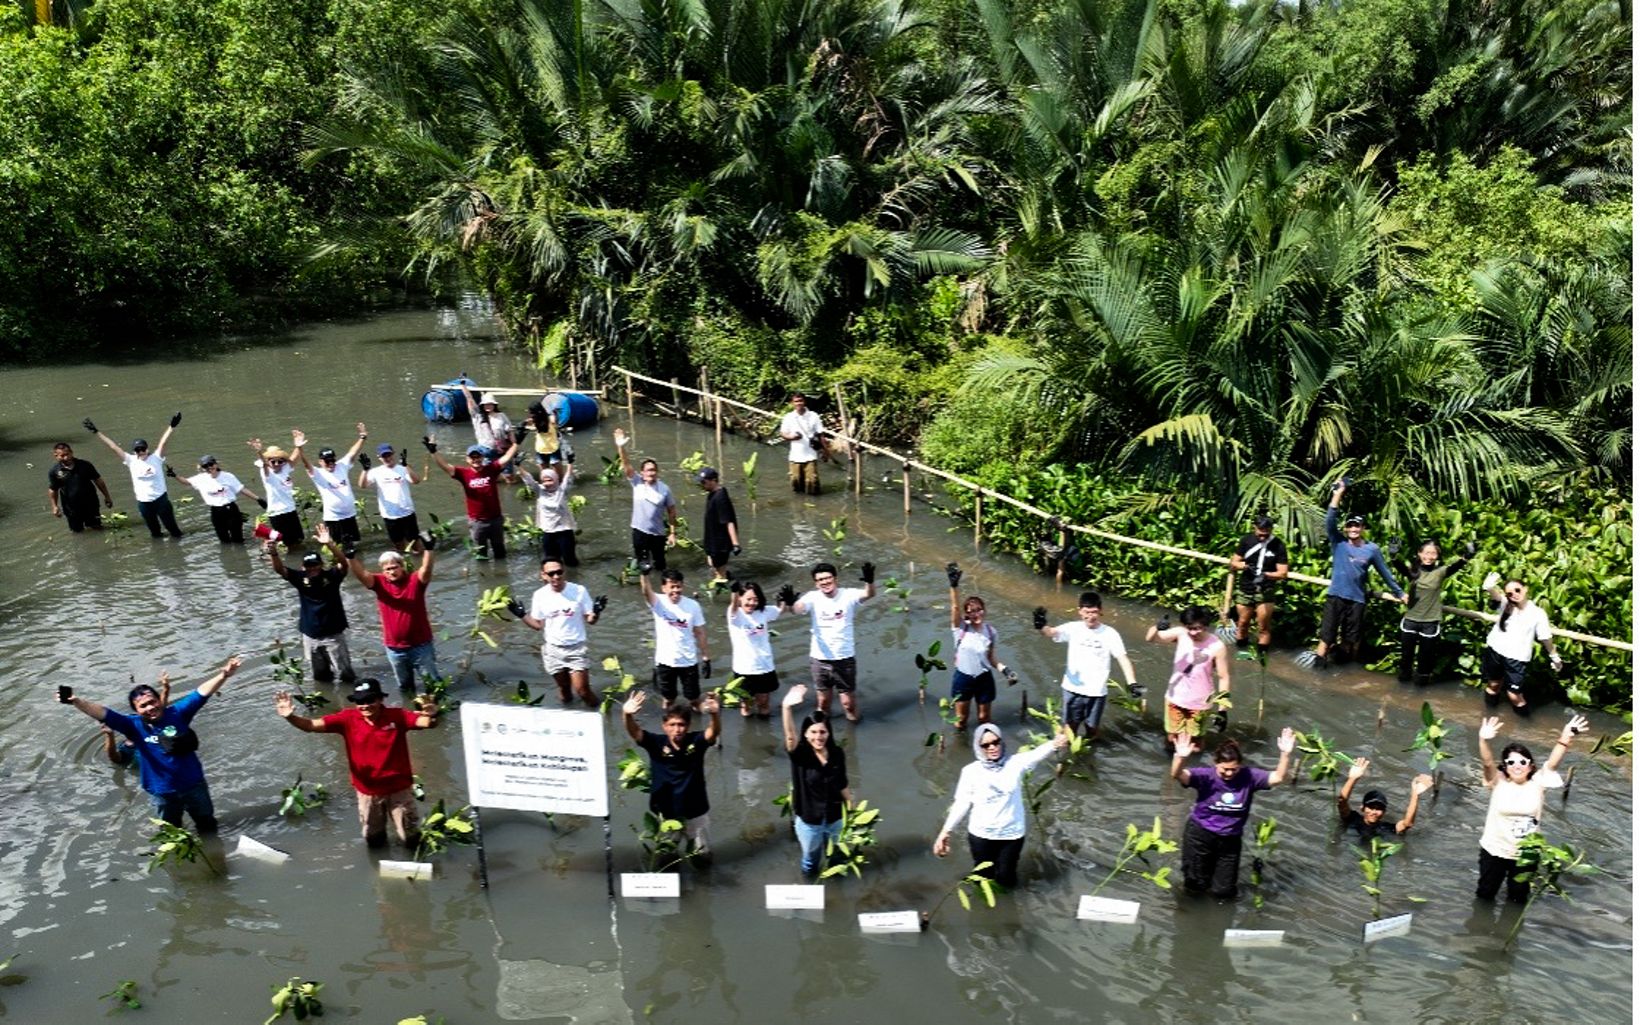 
                
                  Keterangan Foto Balai Konservasi Sumber Daya Alam (BKSDA) Jakarta bersama Yayasan Konservasi Alam Nusantara (YKAN) dan Disney menanam melakukan kegiatan penanaman mangrove dan Ngobrol Santai Konservasi (Ngonser) di Suaka Margasatwa (SM) Muara Angke dengan tema “Melestarikan Mangrove, Melestarikan Kehidupan”, pada Sabtu (21/1). Kegiatan ini juga merupakan bagian dari rangkaian kampanye “Keep Our Oceans Amazing” yang bertujuan meningkatkan kesadaran dan pemahaman masyarakat tentang pentingnya pelestarian ekosistem laut dan pesisir.
                  © Dzimar Prakoso/YKAN
                
              